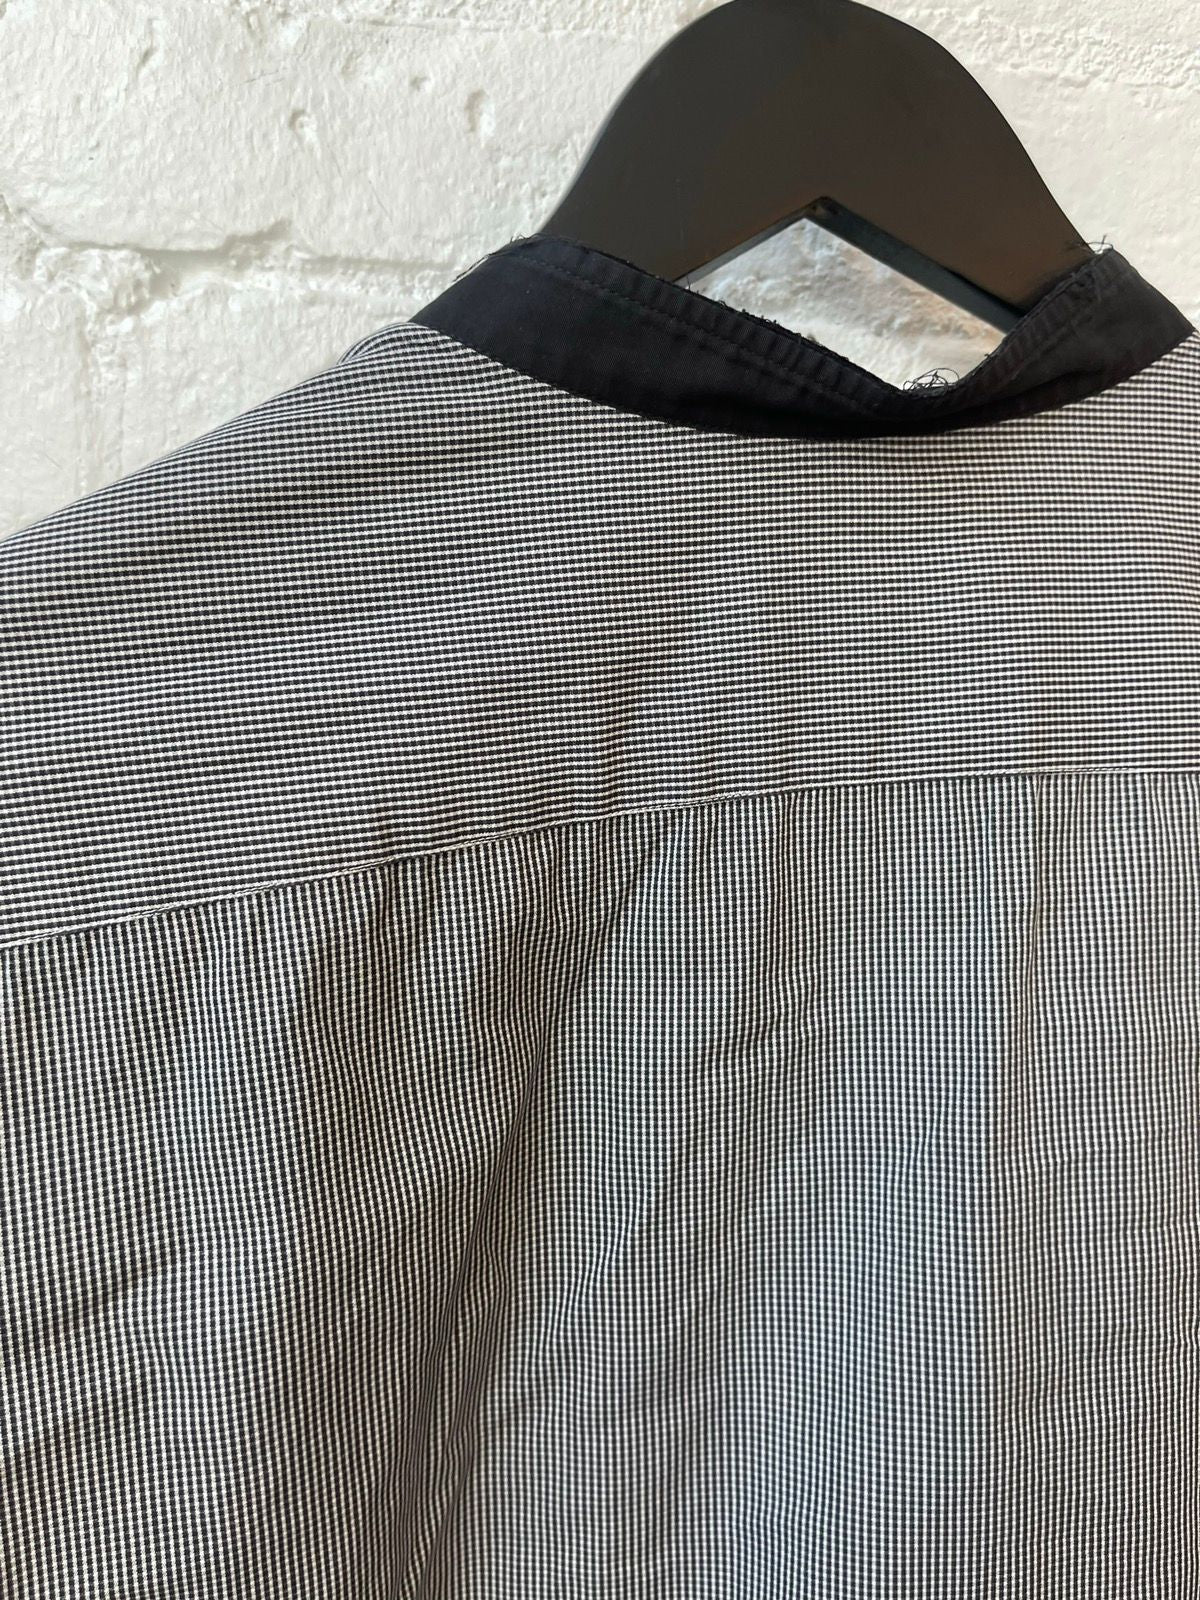 Balmain SS10 Decarnin Campaign Stripe Button Shirt